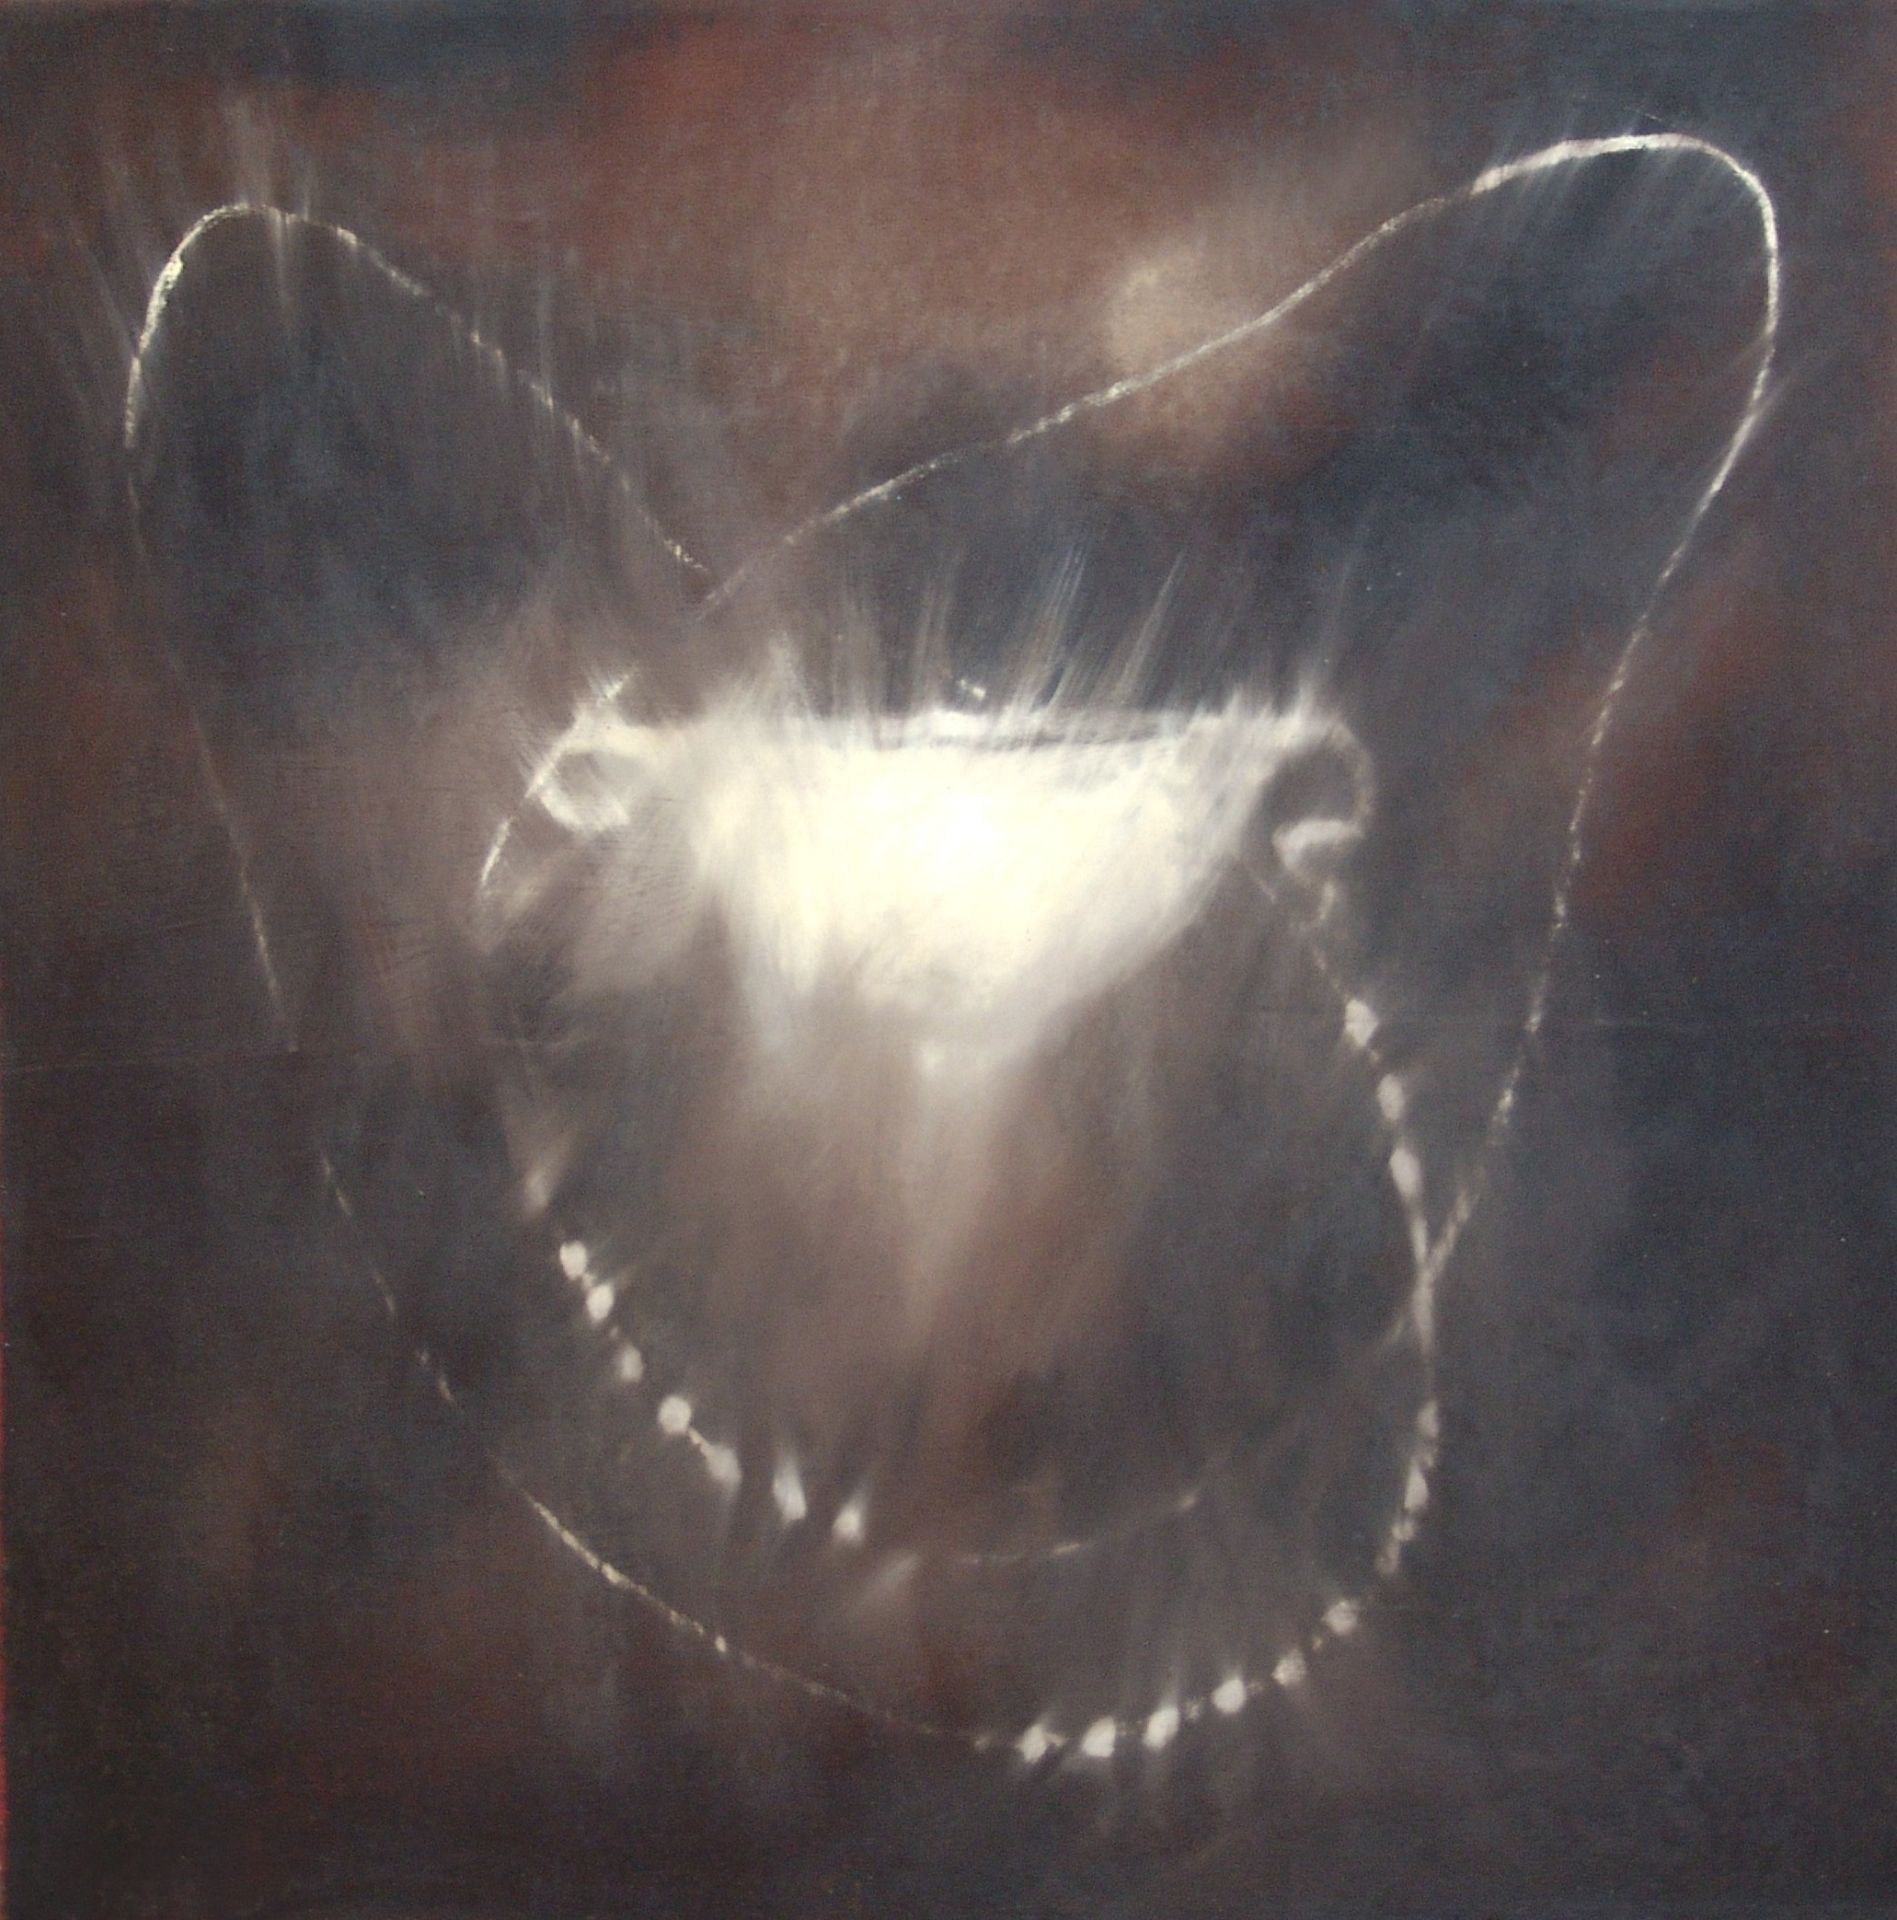 OMAR GALLIANI Perle, 1989, olio su tela, 91x91 cm

firma dell'artista sul retro
&hellip;